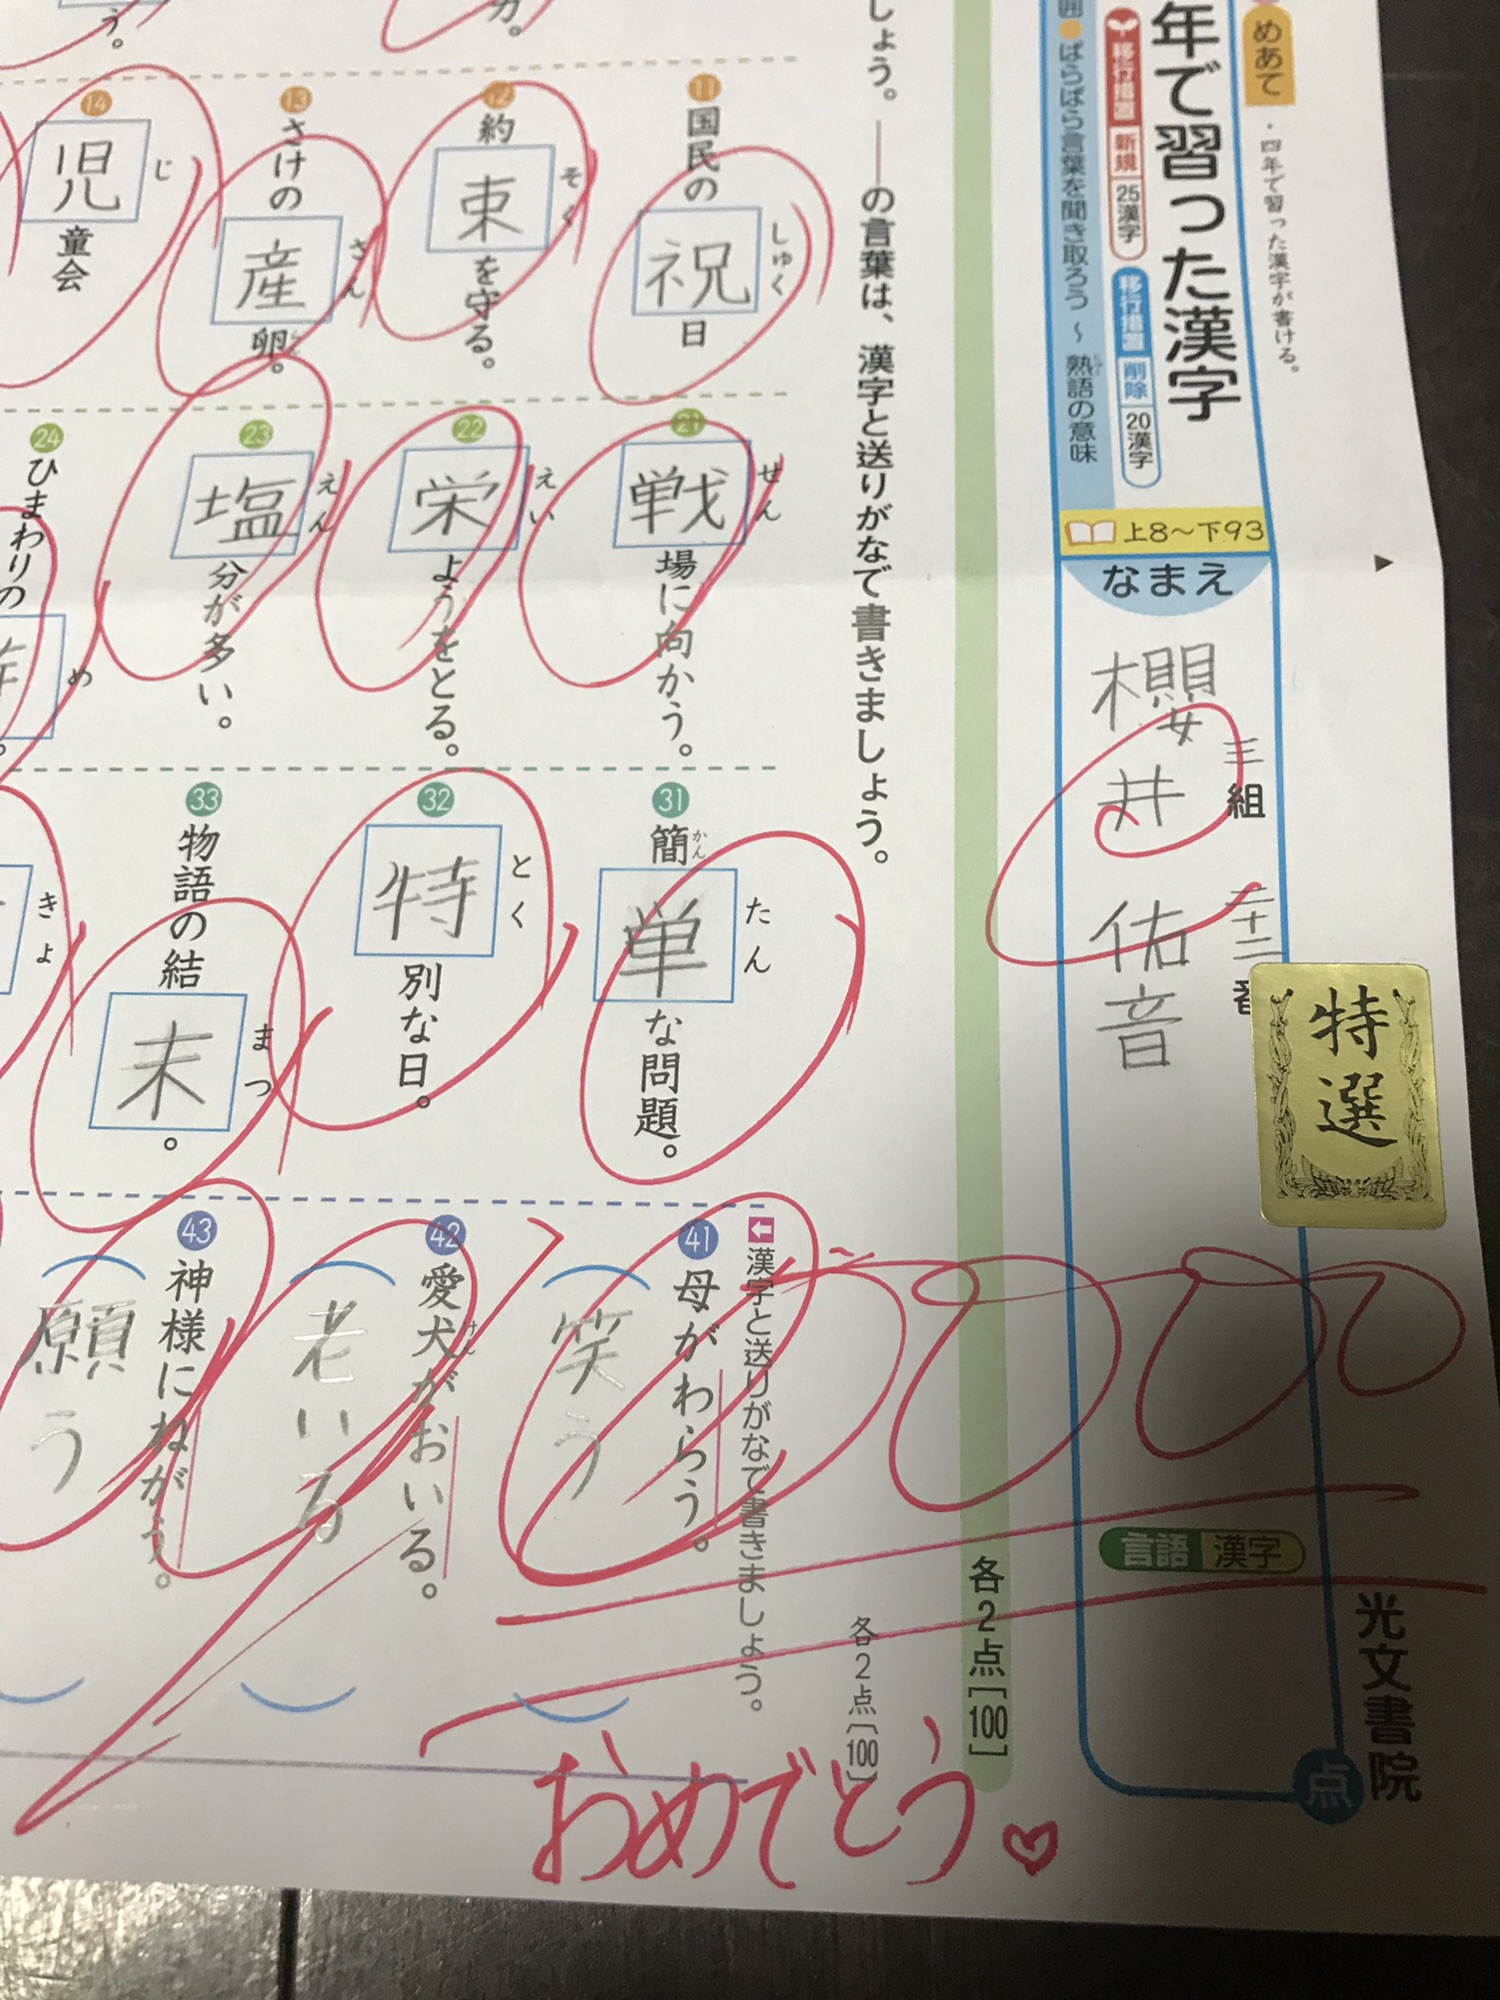 4 年生 四 年生 漢字 50 問 テスト